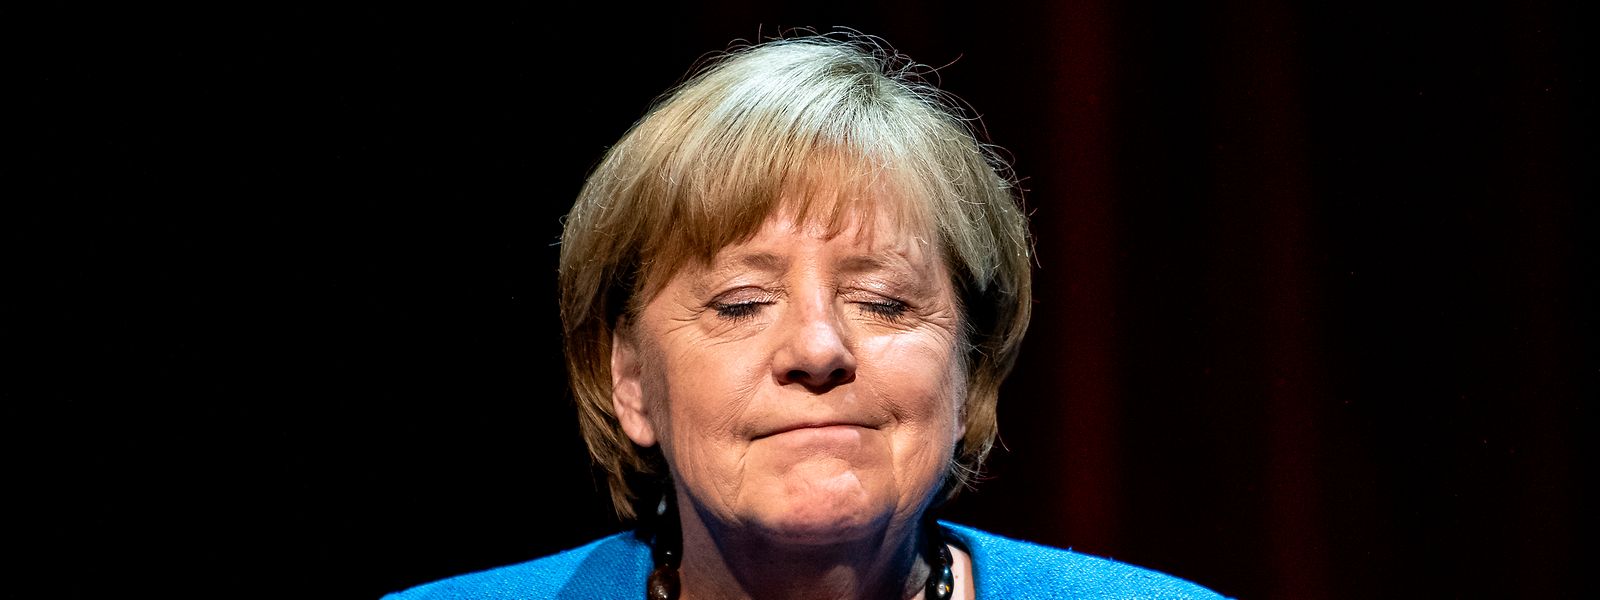 Wann der Preis an Merkel verliehen wird, steht noch nicht fest.